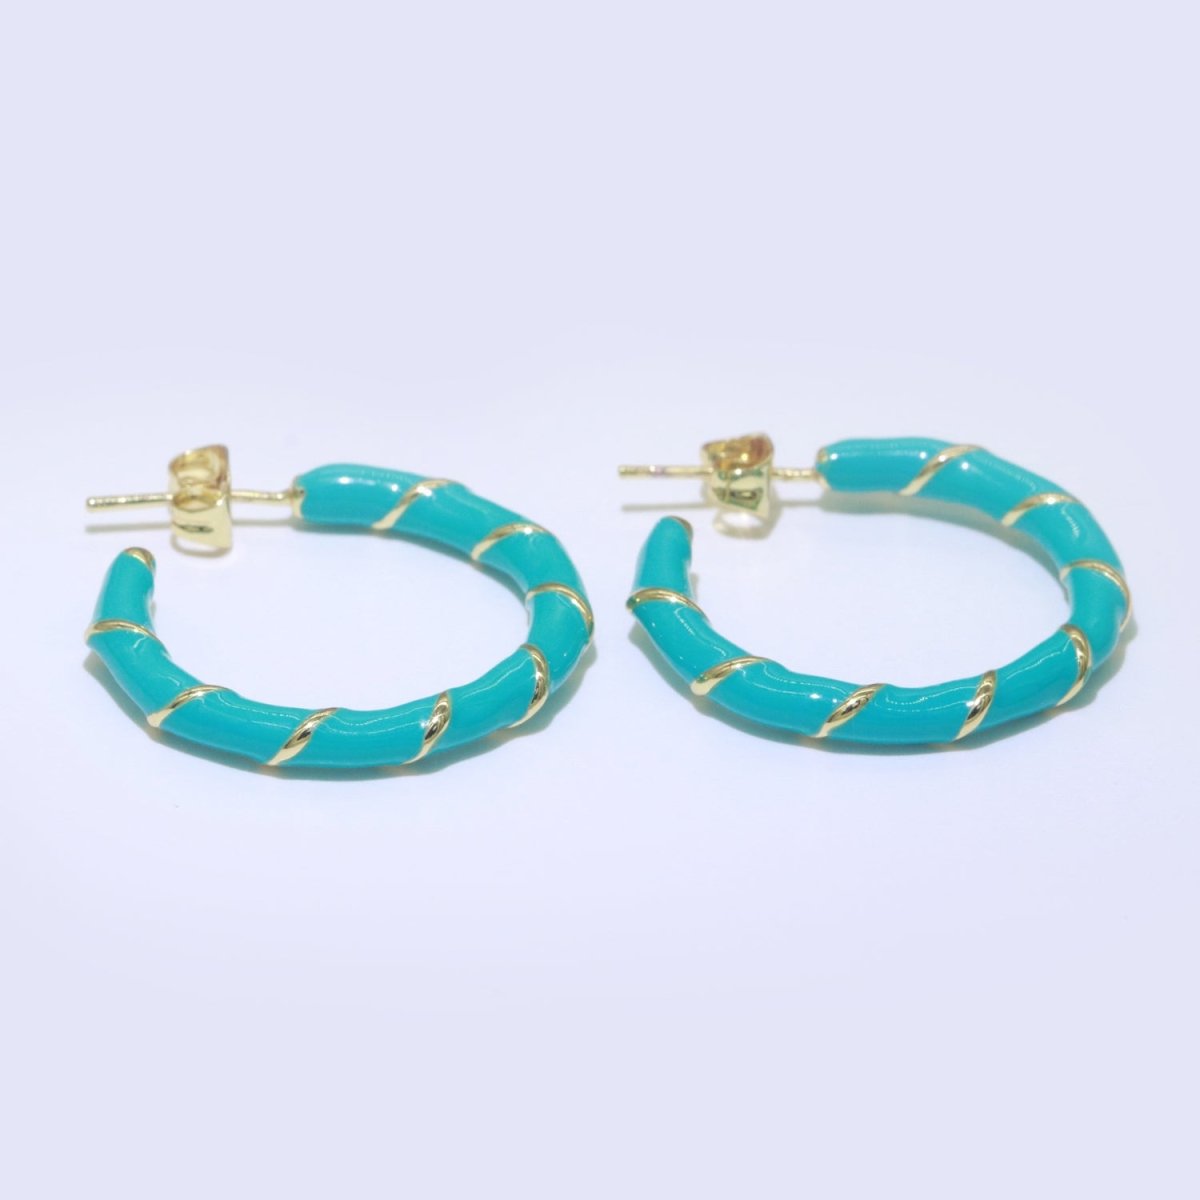 Teal Enamel Hoop Earring with Gold Swirl 26mm Hoop earring Jewelry Gift T-008 - DLUXCA